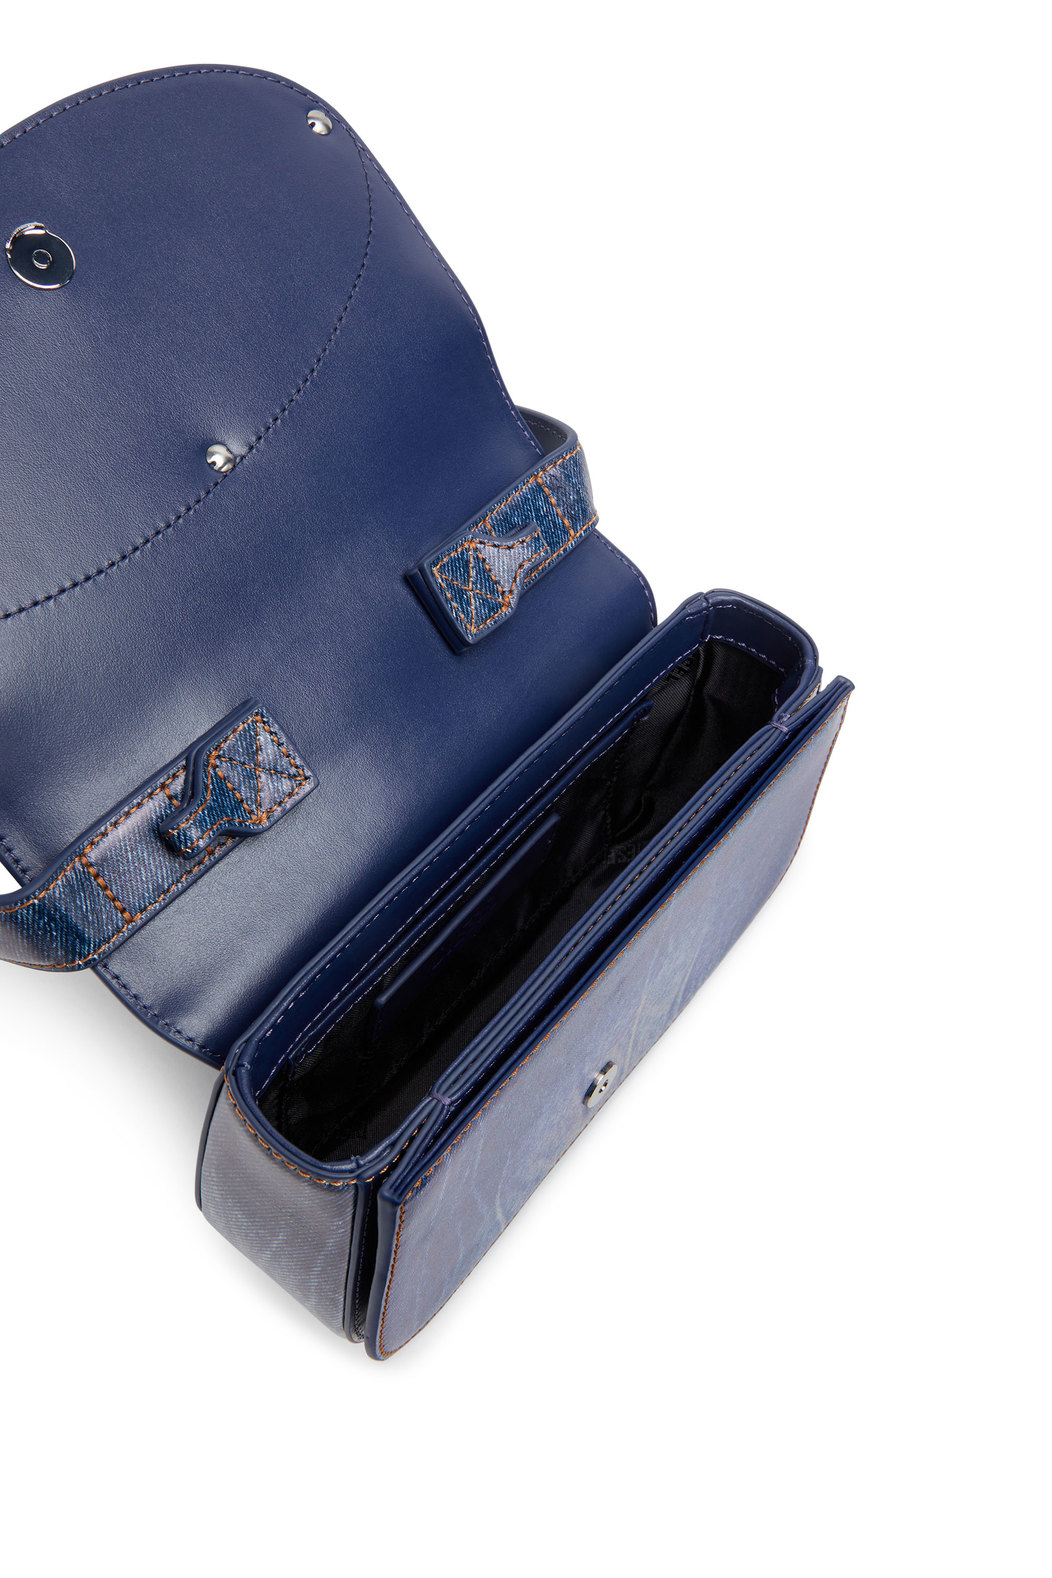 1DR - Iconic shoulder bag in denim-print leather